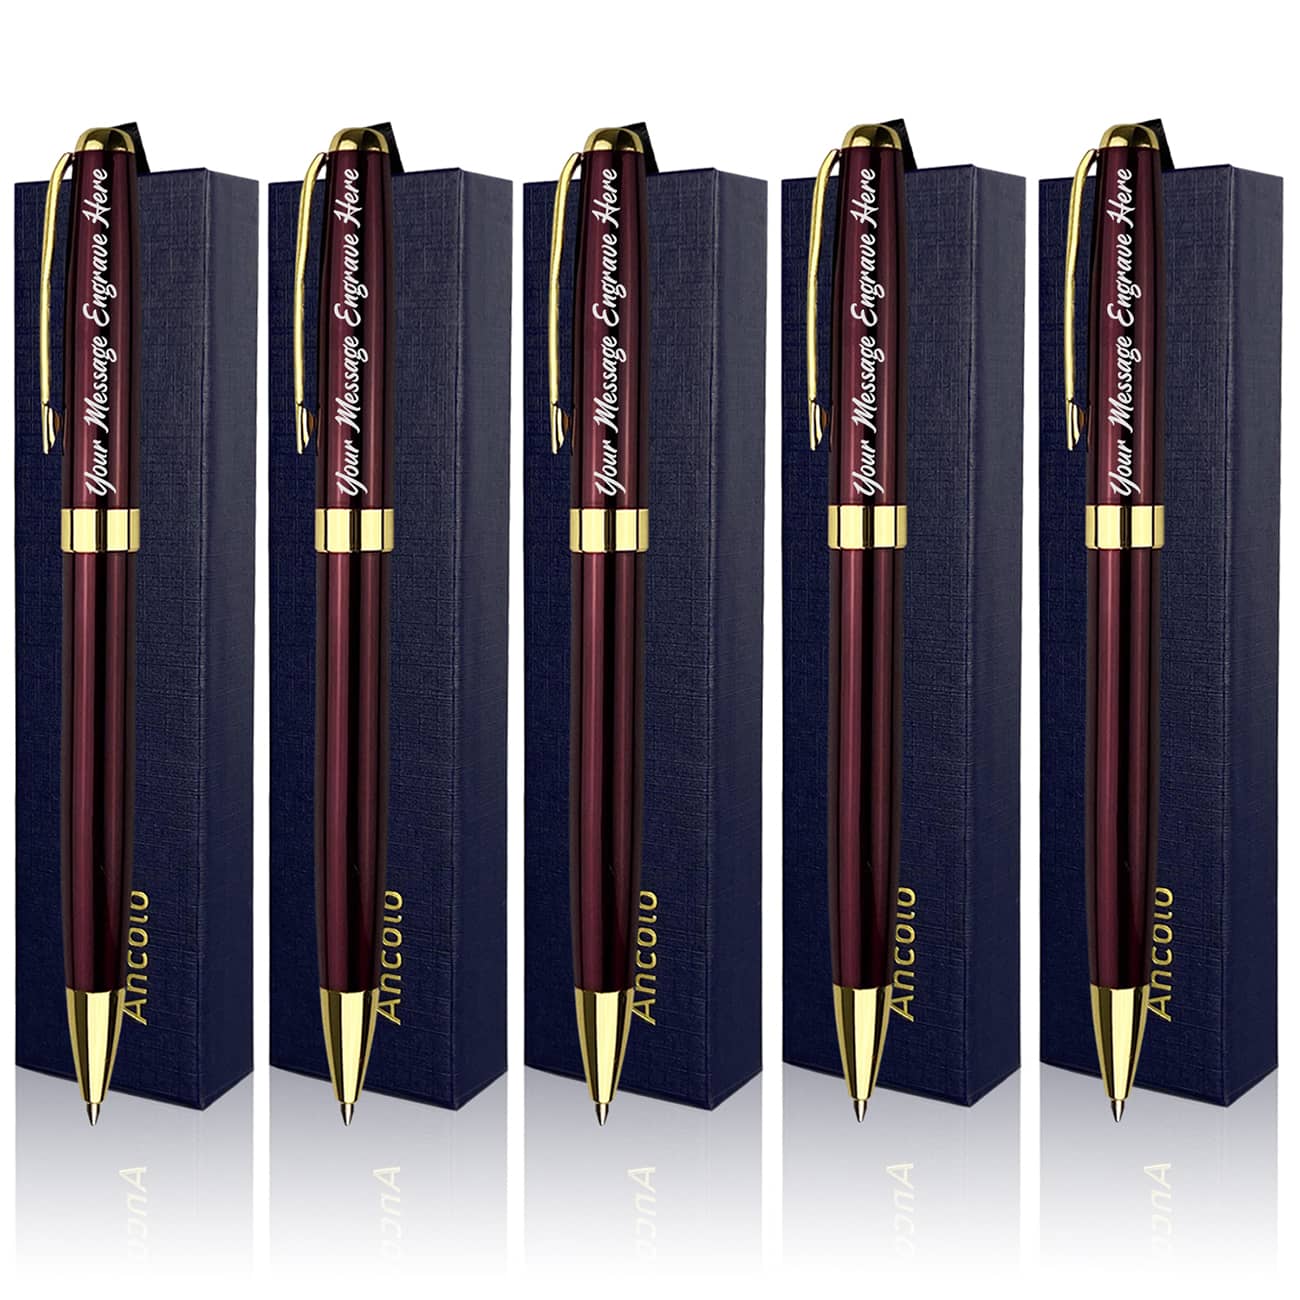 Pen Gift Set - Personalized Olive Gift Set - Luxury Pen Set